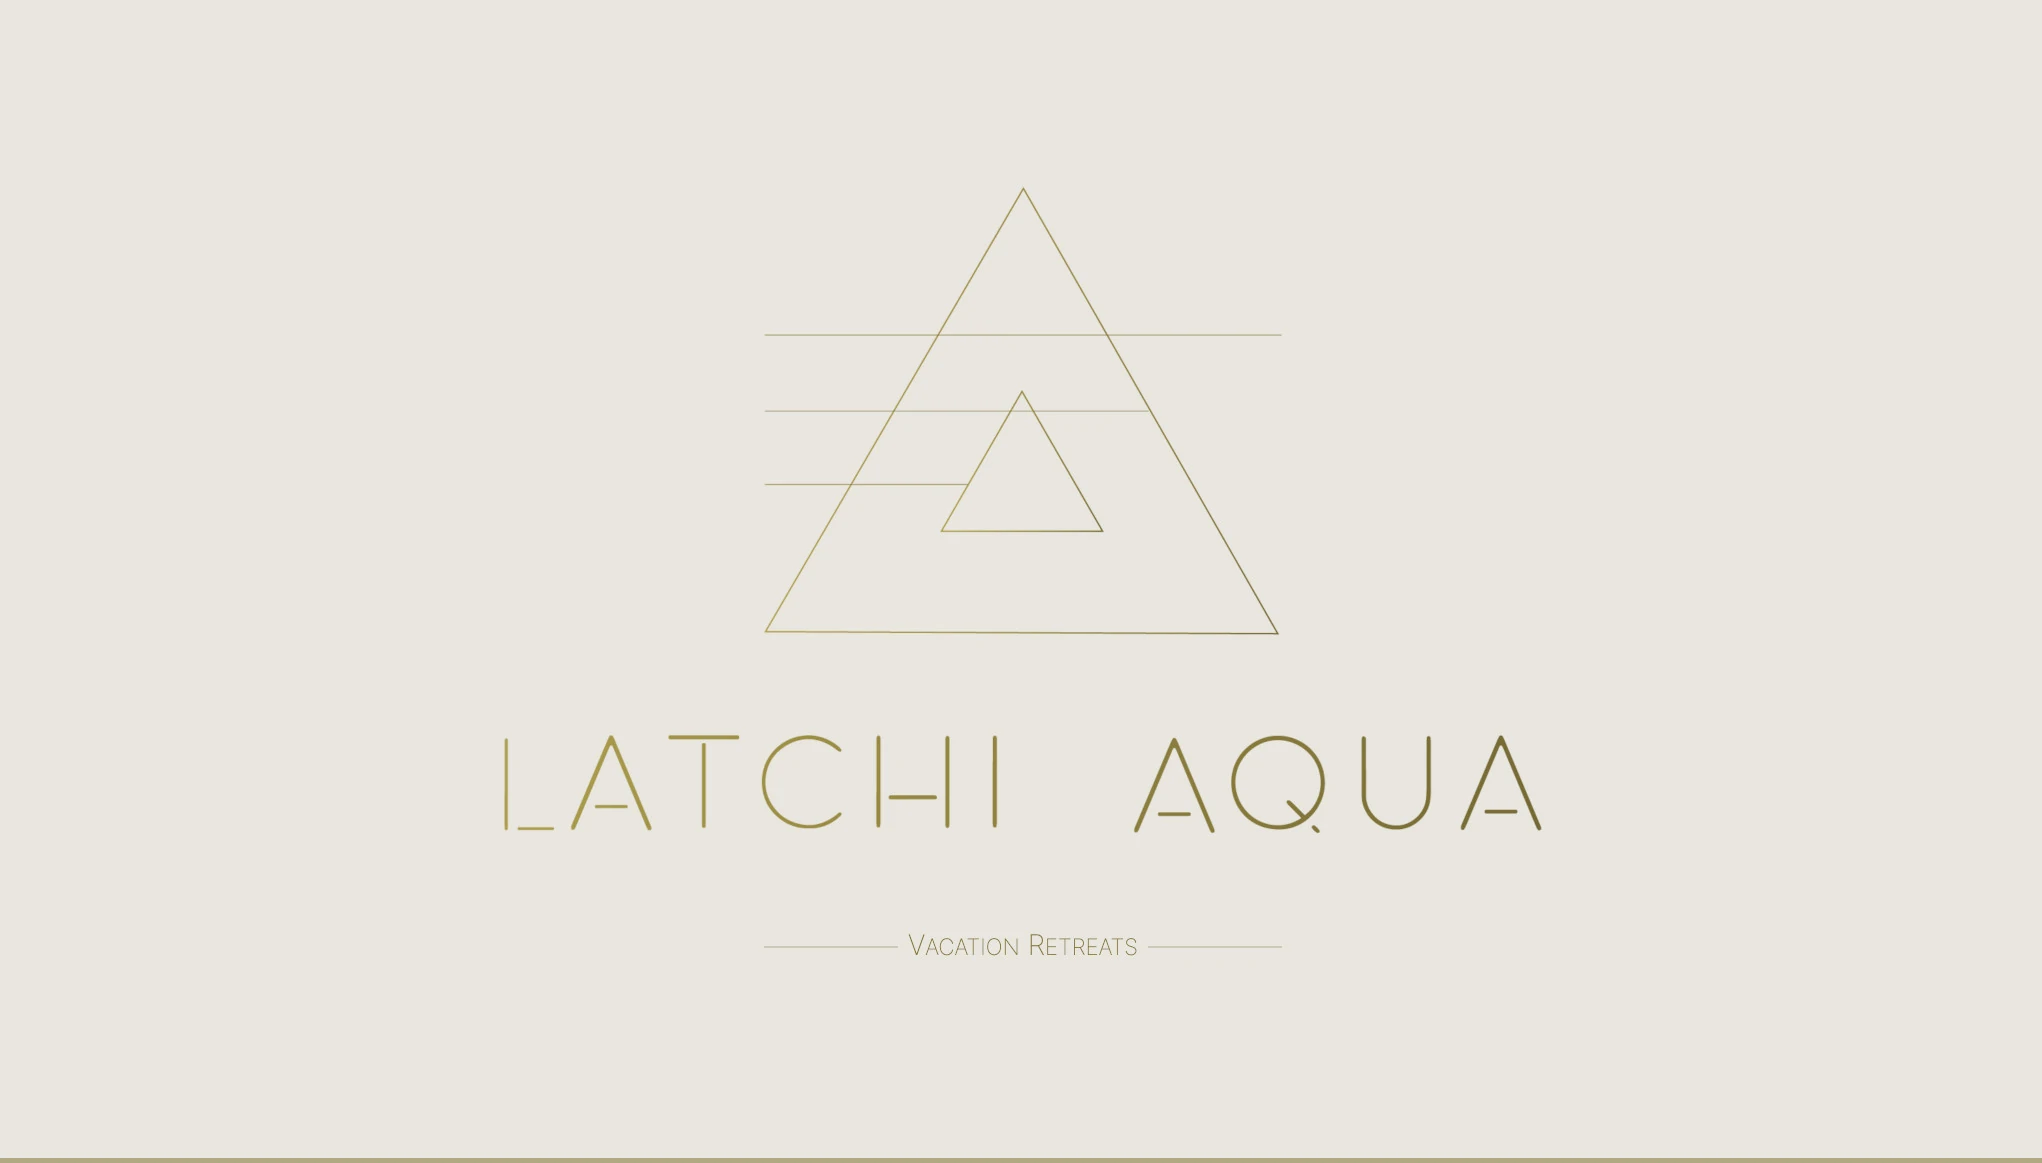 Latchi Aqua